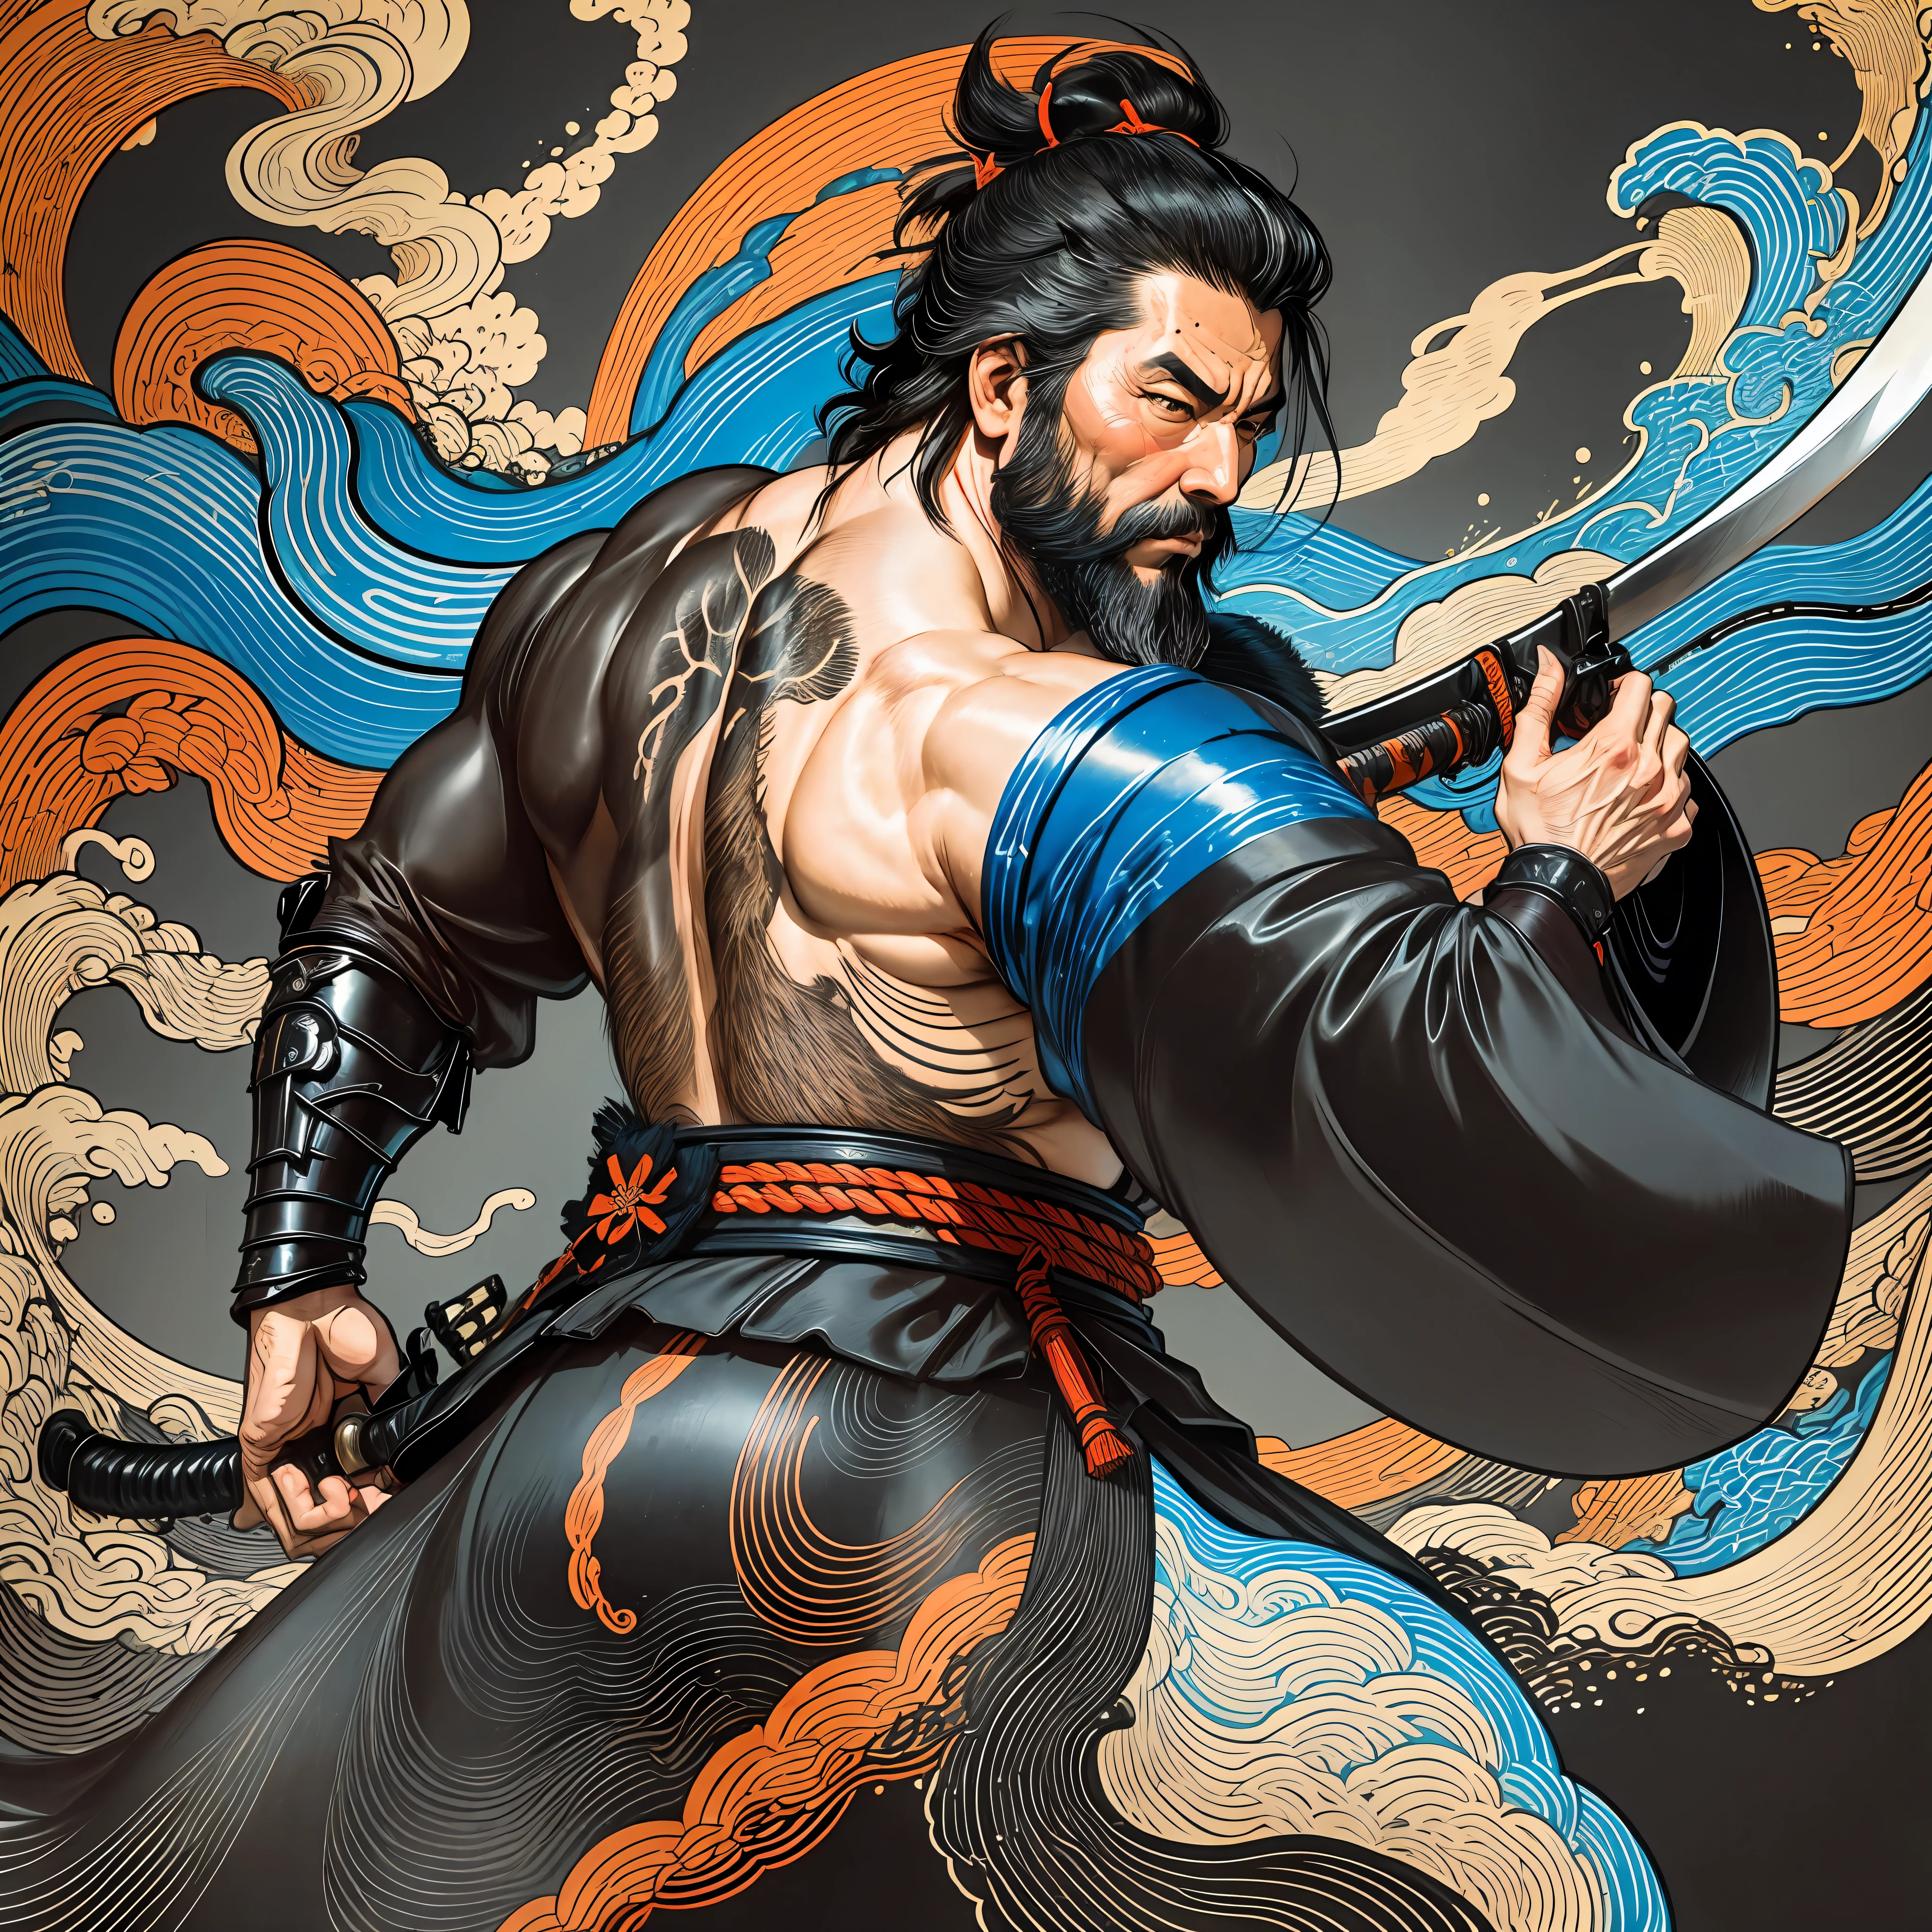 É uma pintura de corpo inteiro com cores naturais com desenhos de linhas no estilo Katsushika Hokusai.. O espadachim Miyamoto Musashi tem um corpo grande como um homem forte. Samurais do Japão. Ele tem uma expressão de determinação digna, mas viril, Cabelo preto curto, e um curto, barba aparada. A parte superior de seu corpo está coberta por um quimono preto e seu hakama vai até os joelhos.. Na mão direita ele segura uma espada japonesa com uma parte de espada mais longa. na mais alta qualidade, no relâmpago de alta resolução do estilo ukiyo-e e nas chamas rodopiantes da obra-prima. Miyamoto Musashi fica com o rosto e o corpo voltados para frente, suas costas retas.